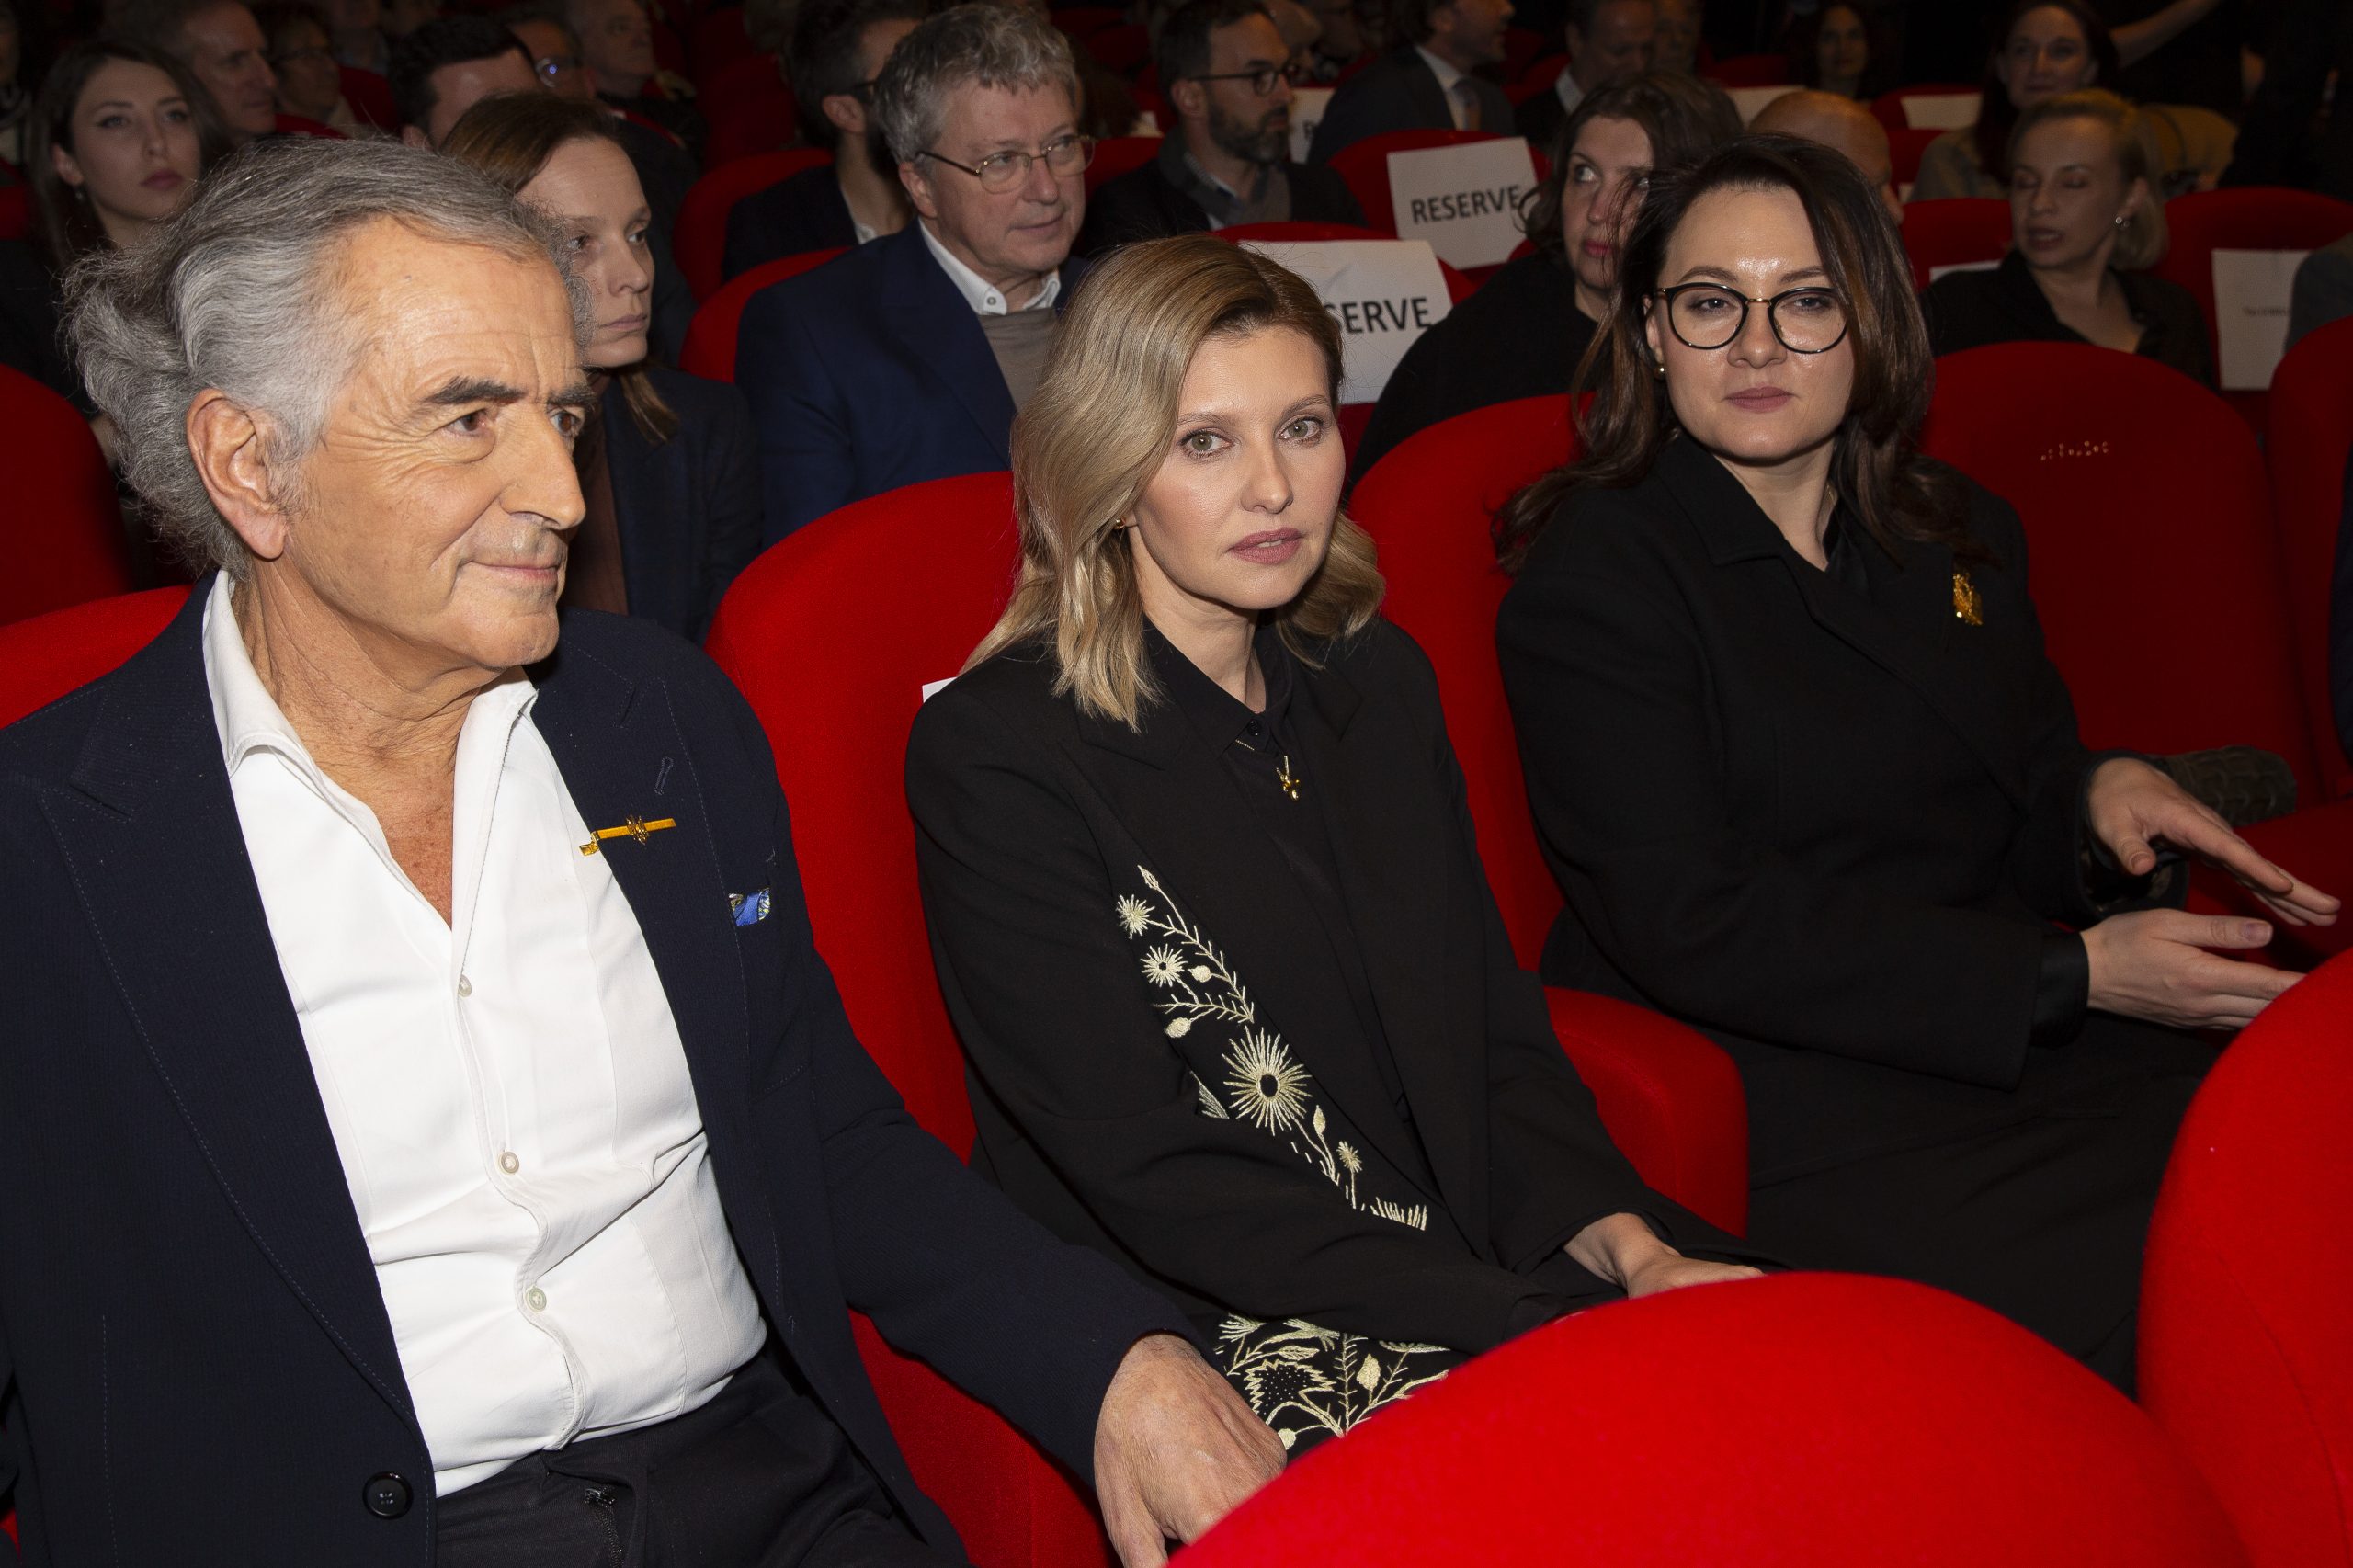 Olena Zelenska assis parmi le public du cinéma le Balzac, elle assiste à la projection du film de BHL qui est assis à côté d'elle